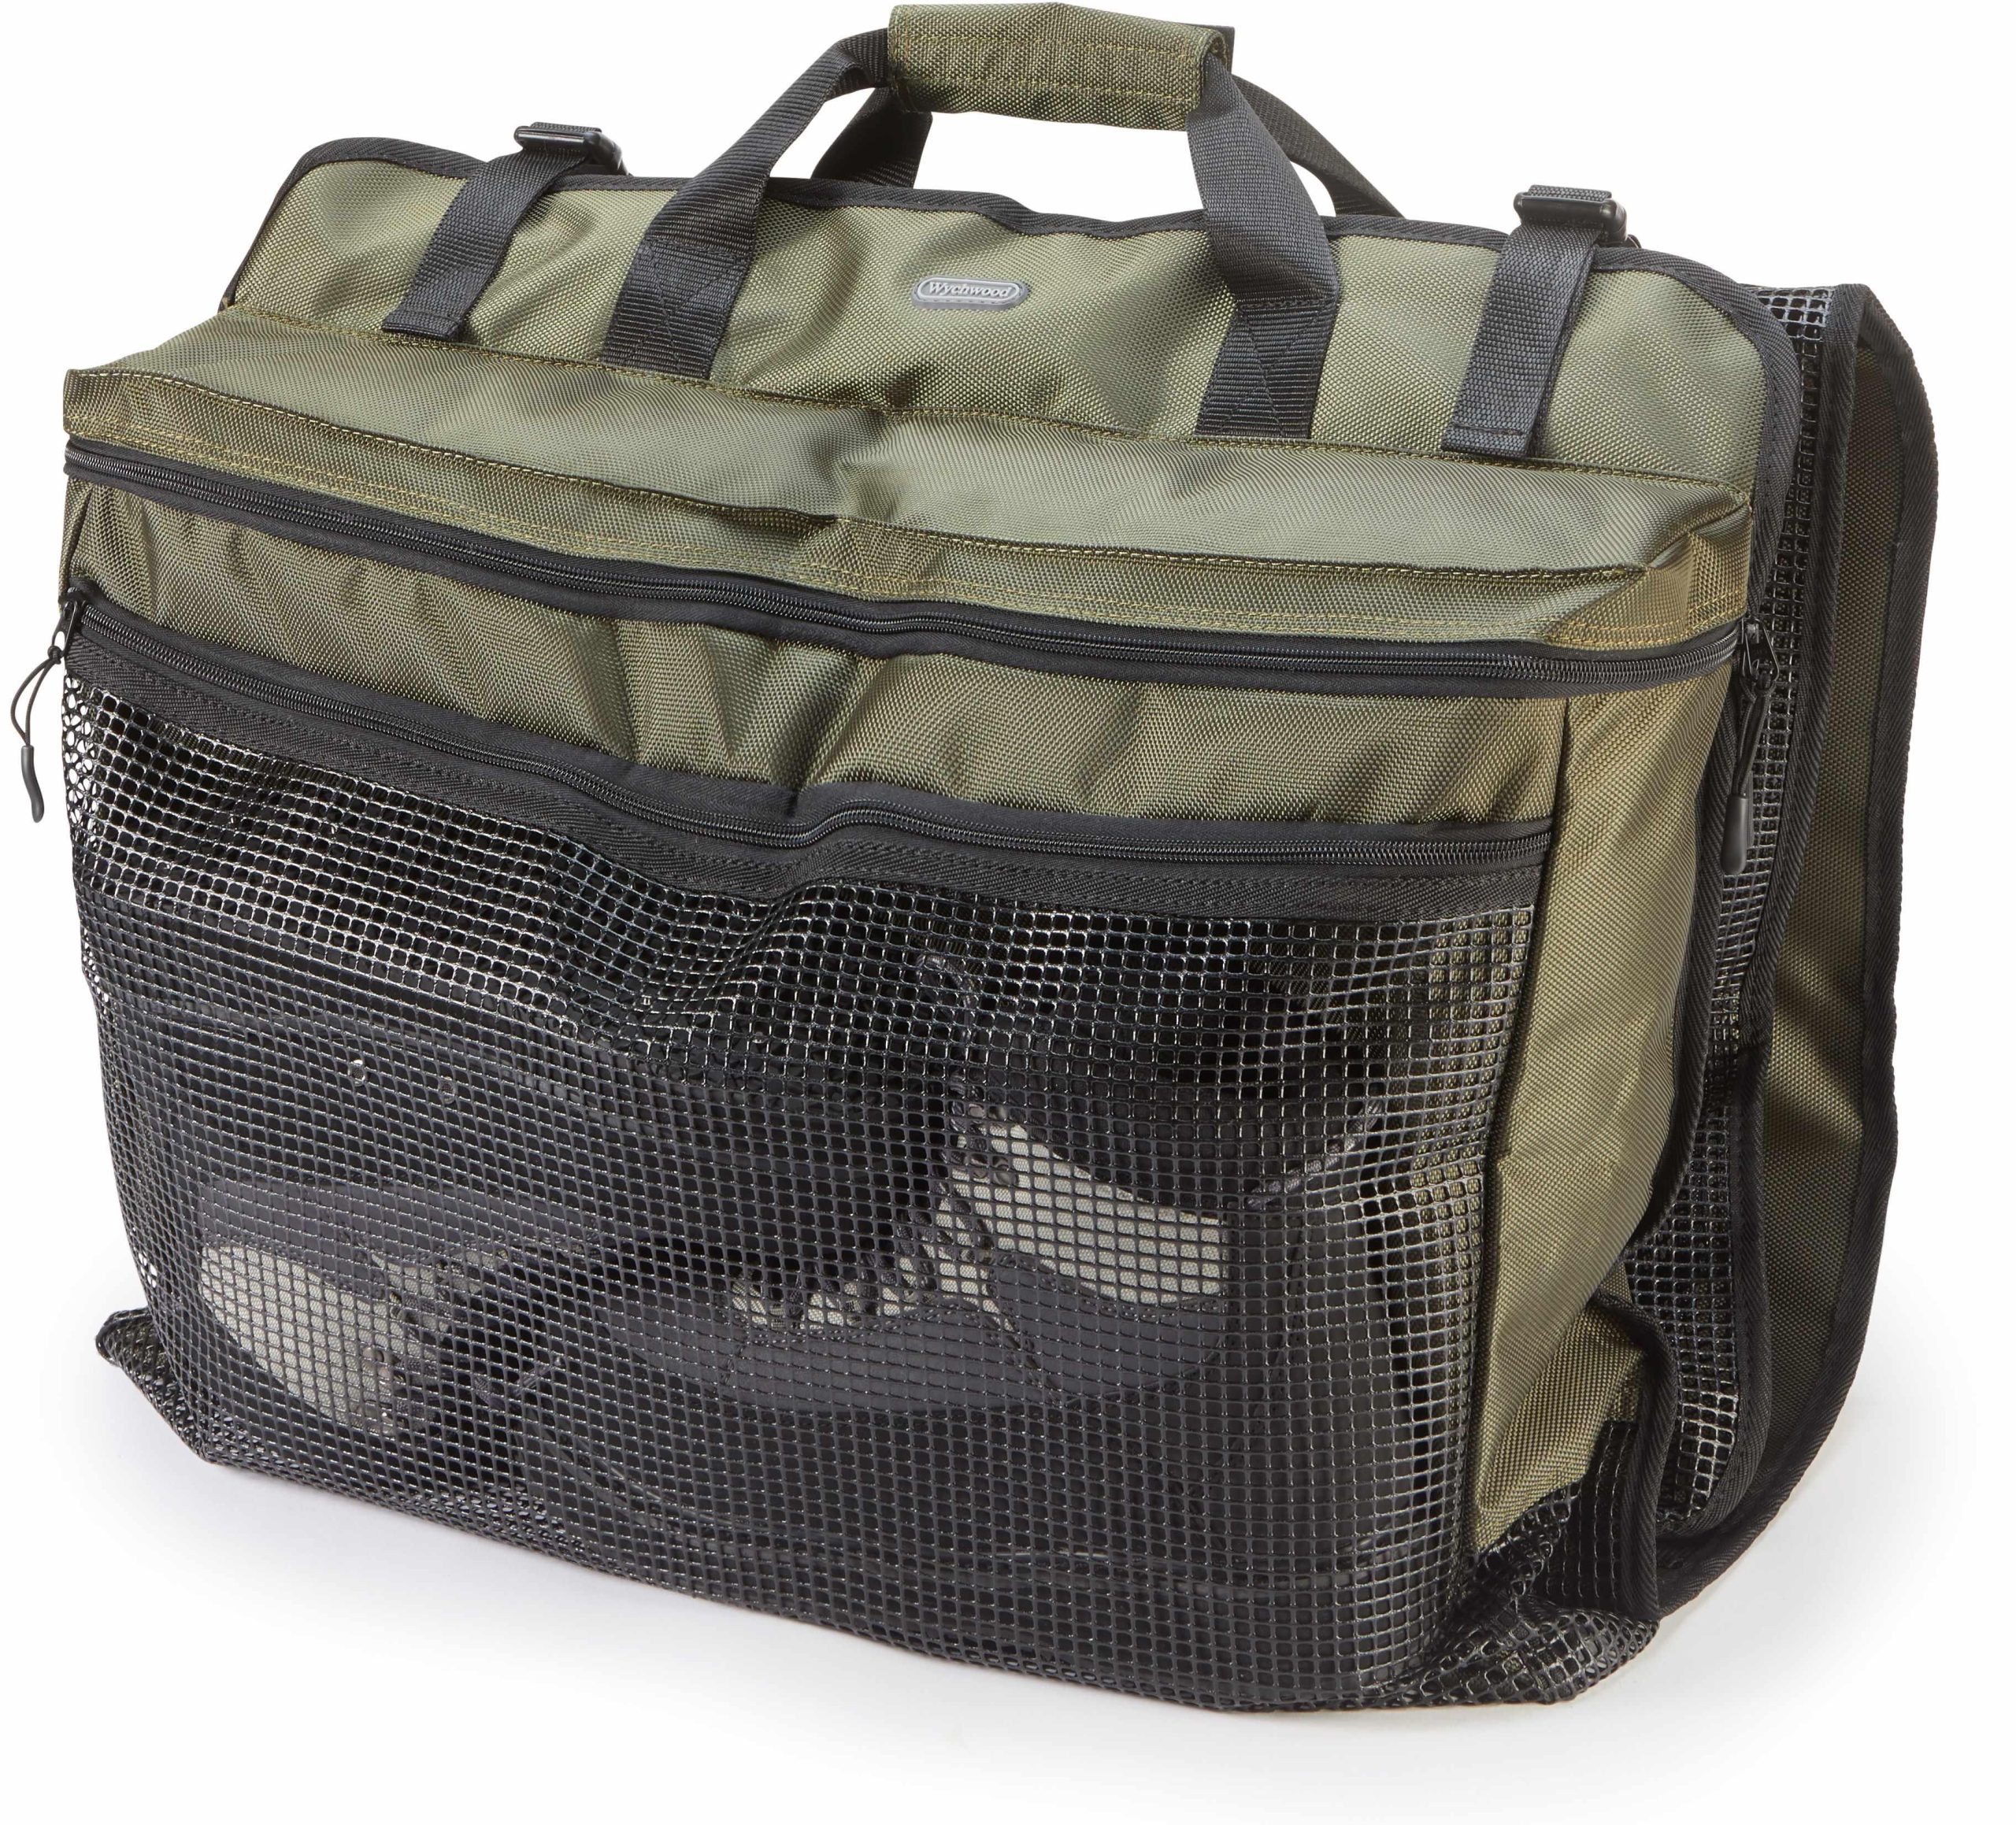 Greys Bank Bag / Game Fishing Luggage Bag